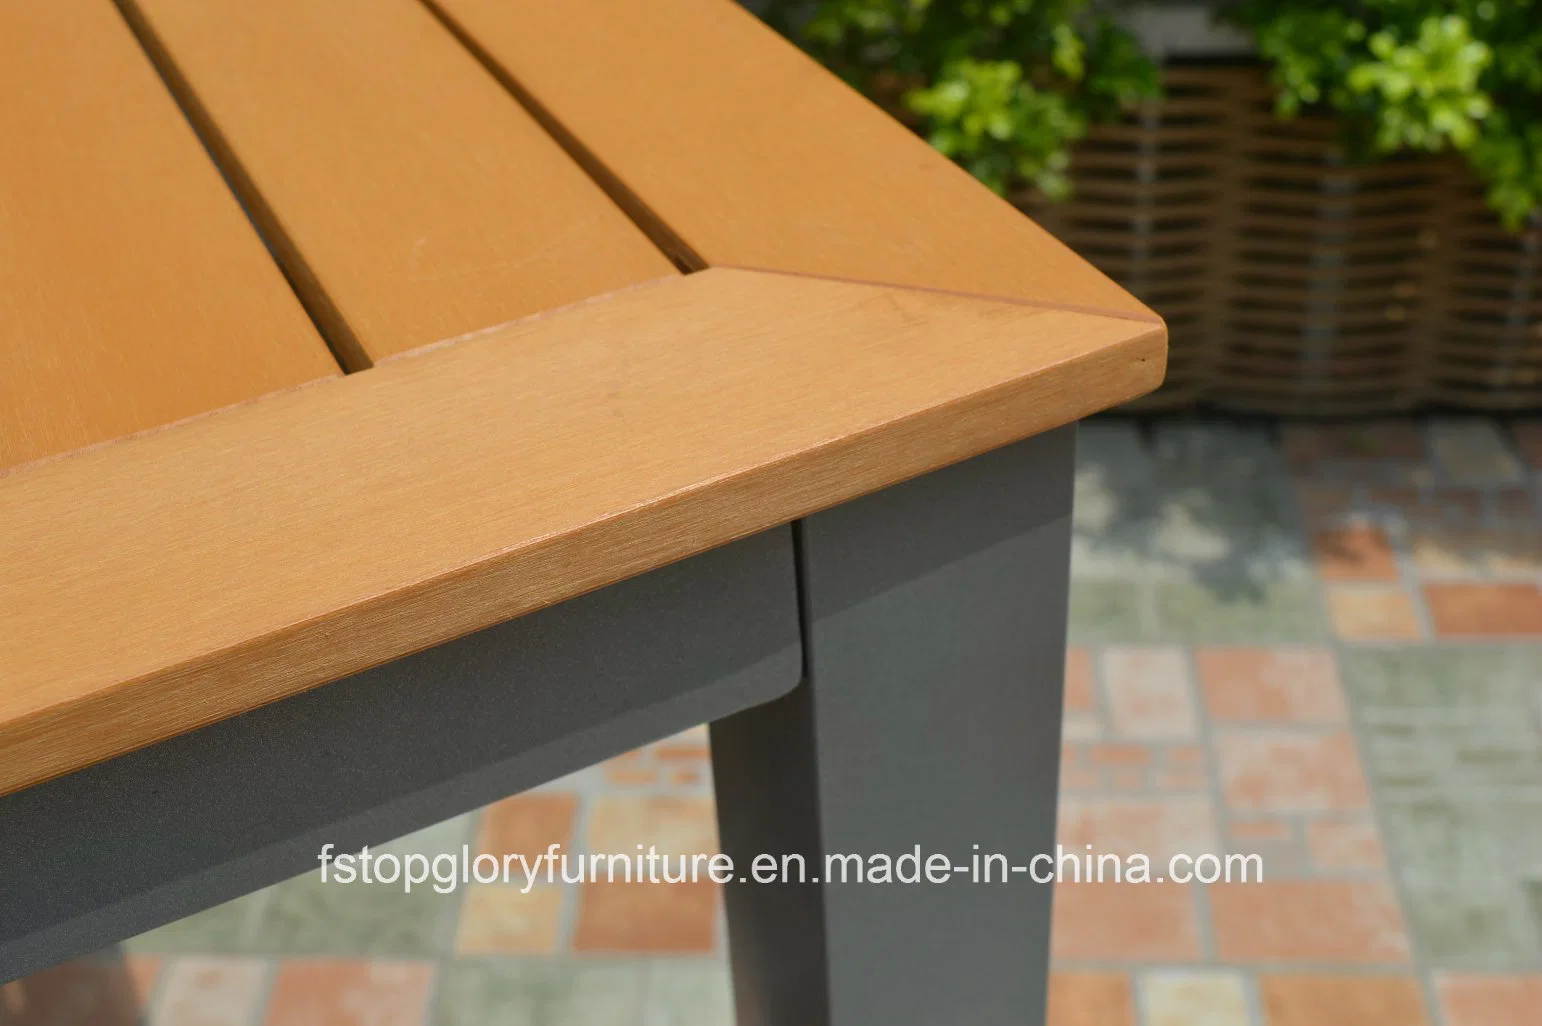 La madera de plástico de la mesa de comedor y sillas juego de muebles de exterior